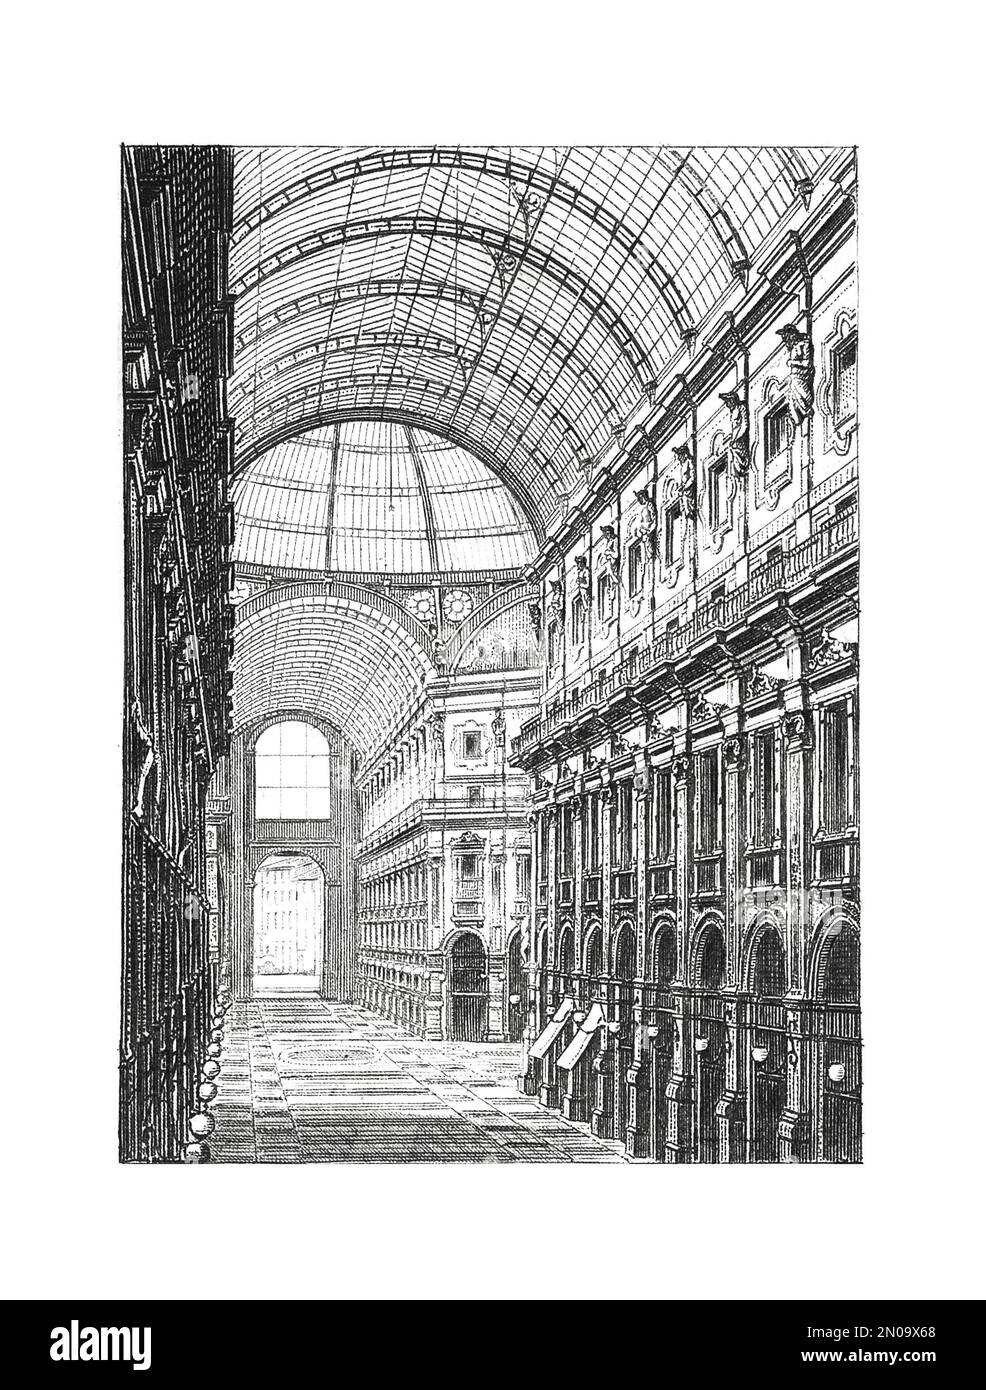 Antike Illustration der Galleria Vittorio Emanuele II, 1861 entworfen und von Giuseppe Mengoni zwischen 1865 und 1877 erbaut. Gravur veröffentlicht in Sy Stockfoto